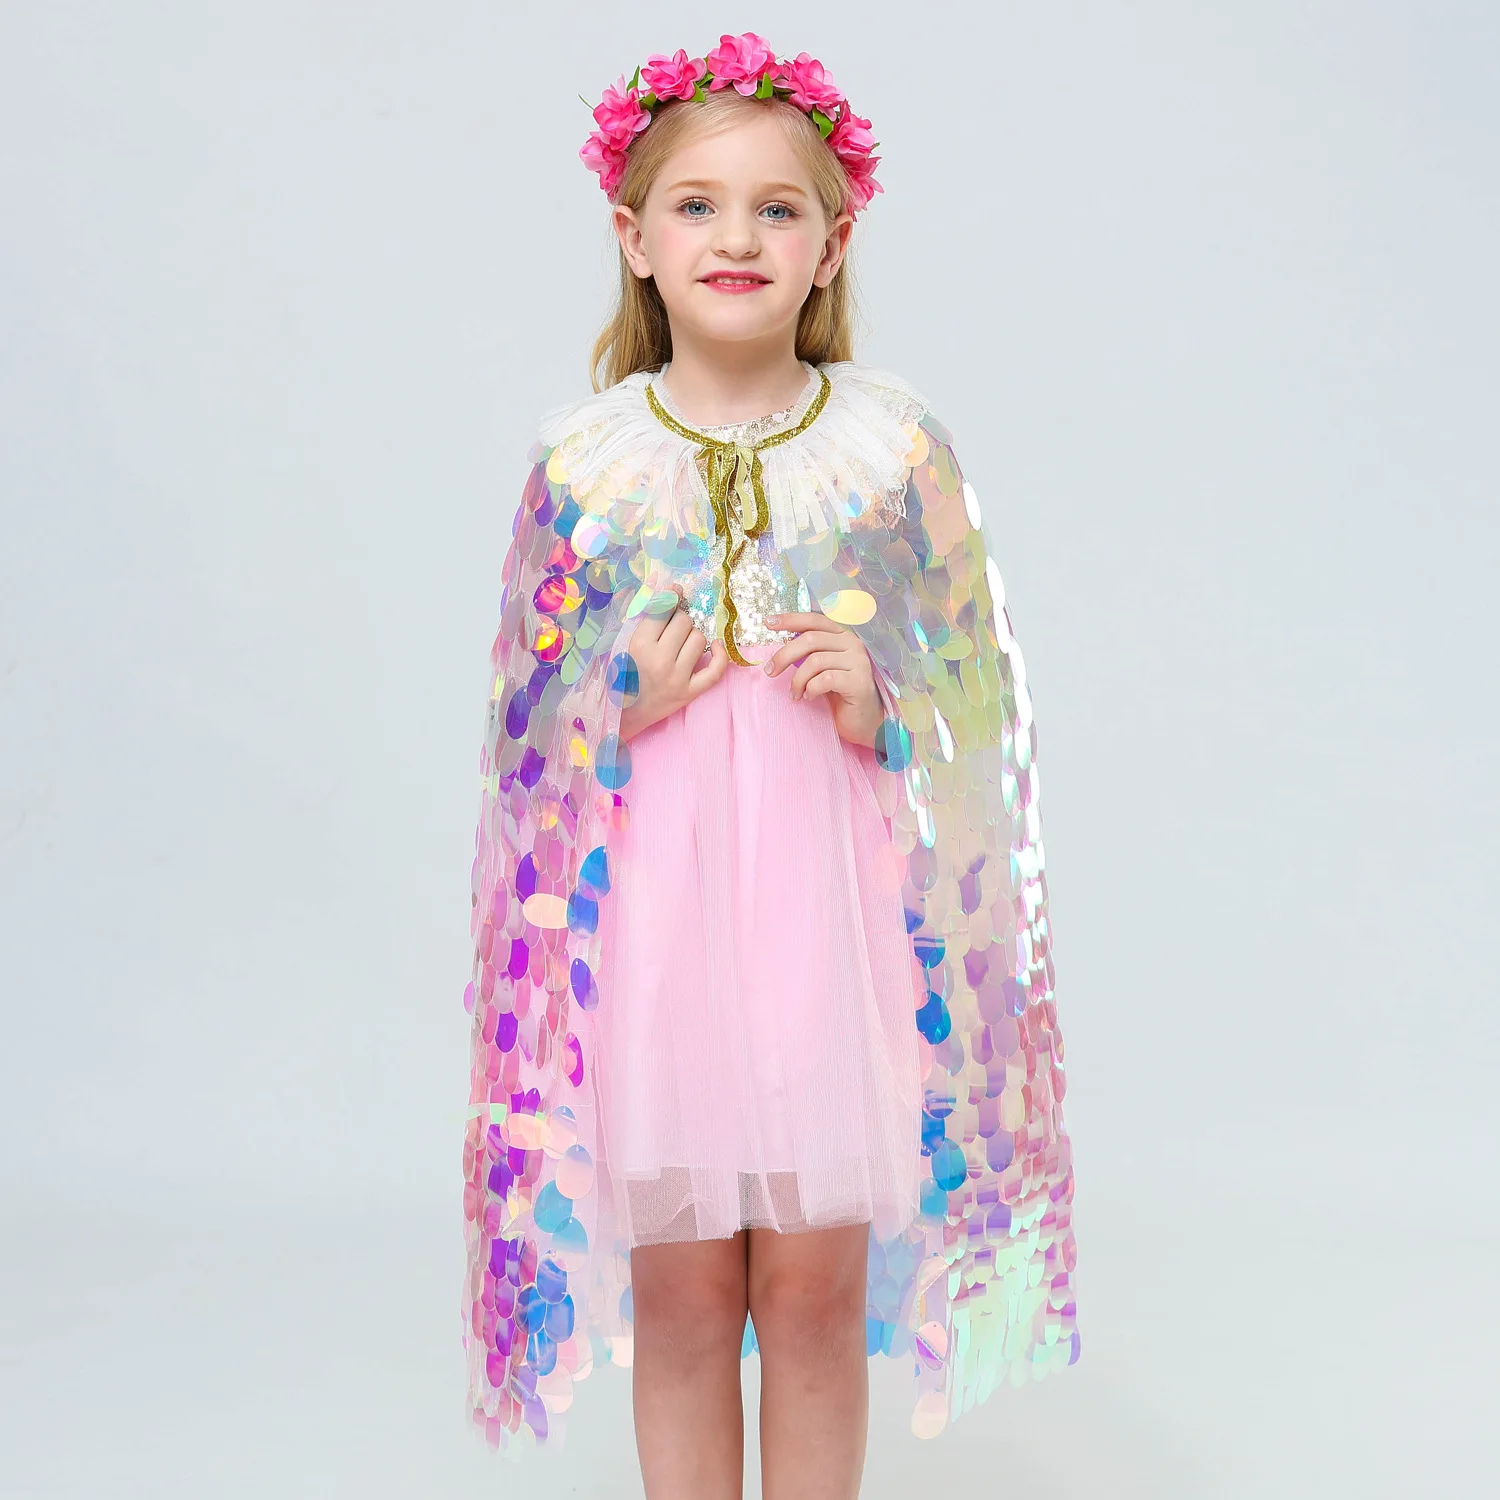 Детский Модный Плащ с блестками для девочек, шаль принцессы, детская праздничная одежда для дня рождения, красивая накидка, маленький костюм на Хэллоуин